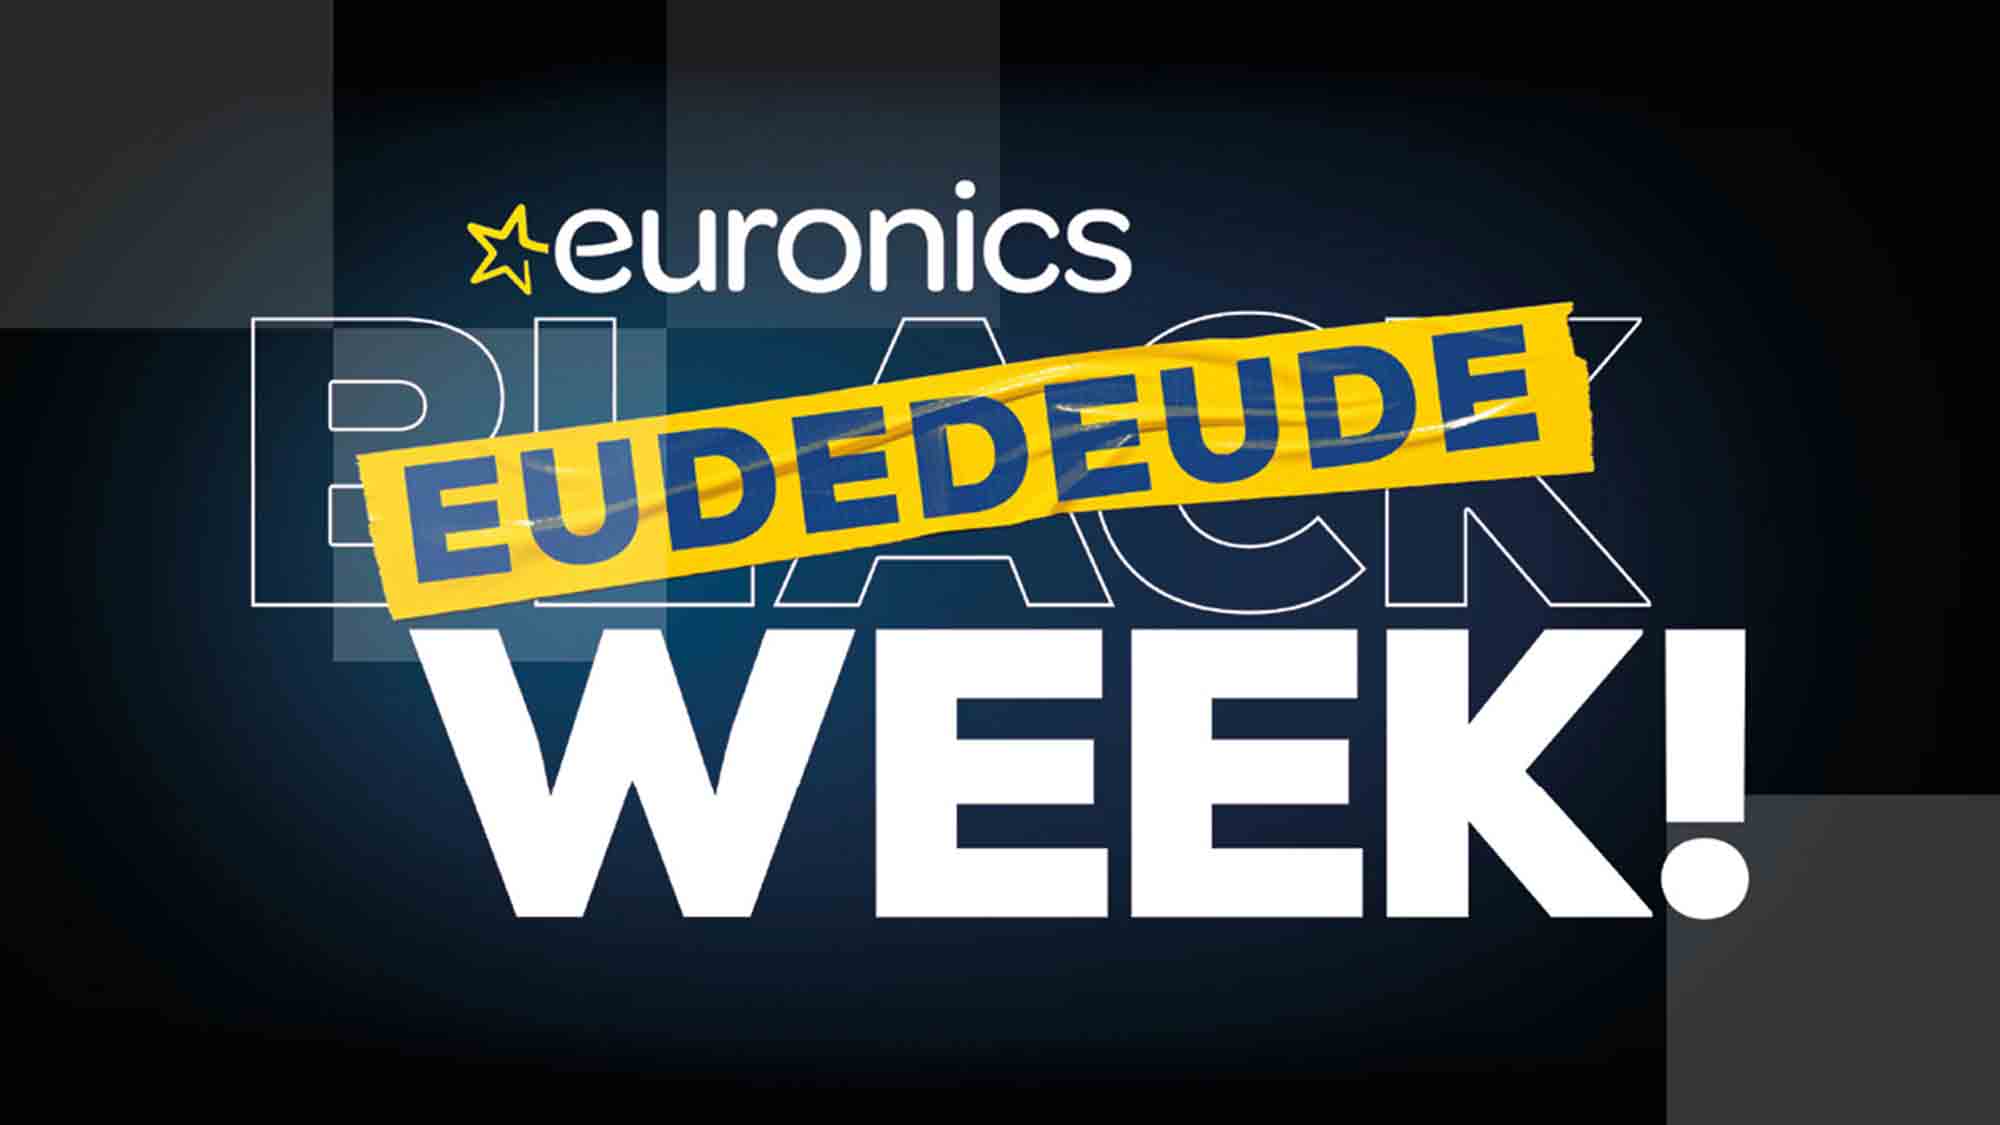 Die Eudedeude Week: Euronics paart attraktive Angebote mit vollumfänglicher Serviceleistung